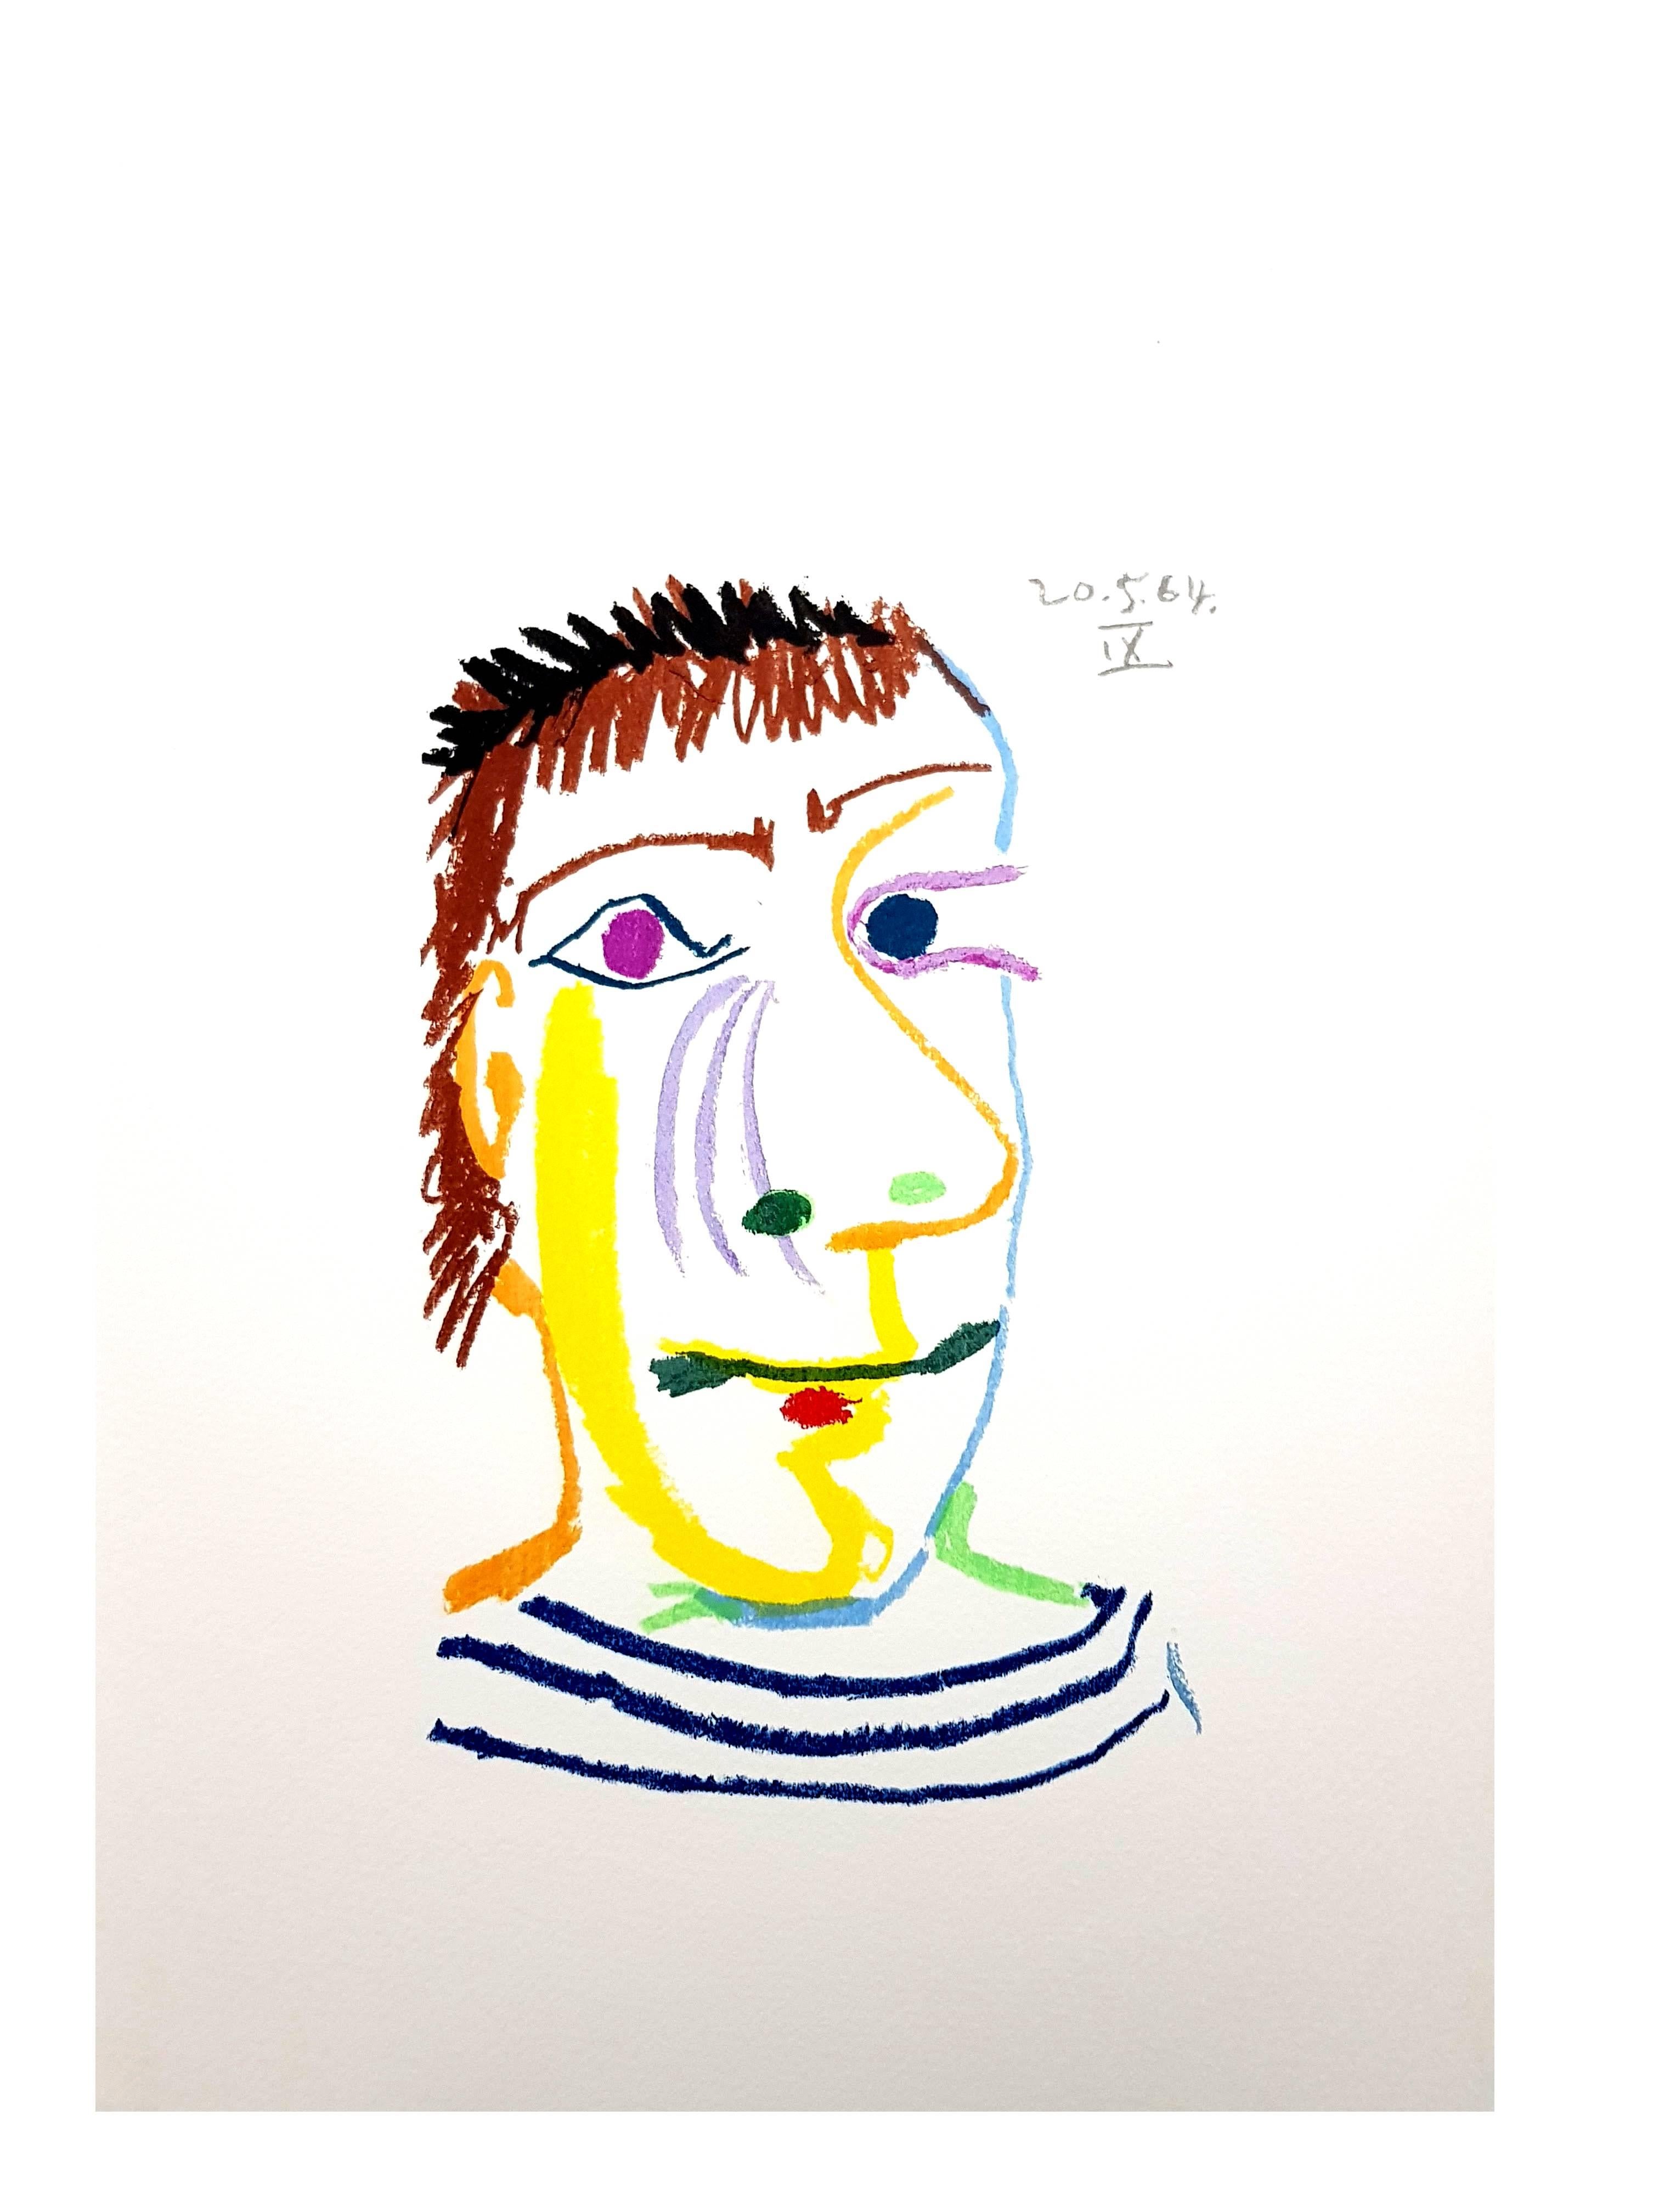 Künstler: Pablo Picasso (nach)
Medium: Lithographie, Arches-Papier
Portfolio: Le Goût de Bonheur
Jahr: 1970
Auflage: Insgesamt 1998 Exemplare (je 666 auf Deutsch, Französisch und Englisch)
Blattgröße: 13